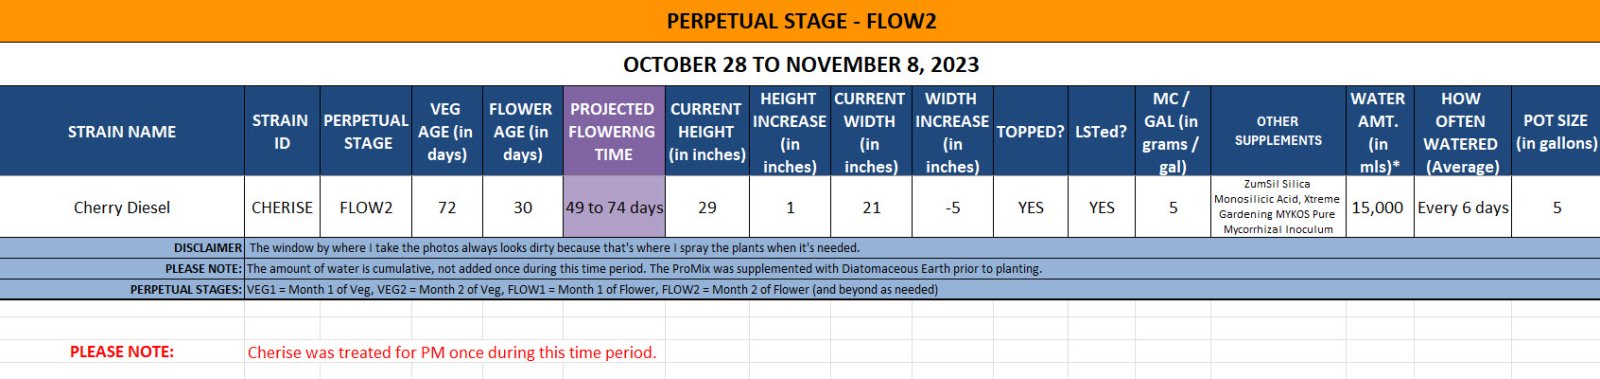 420 Update for Cherry Diesel - October 28 to November 8, 2023.jpg